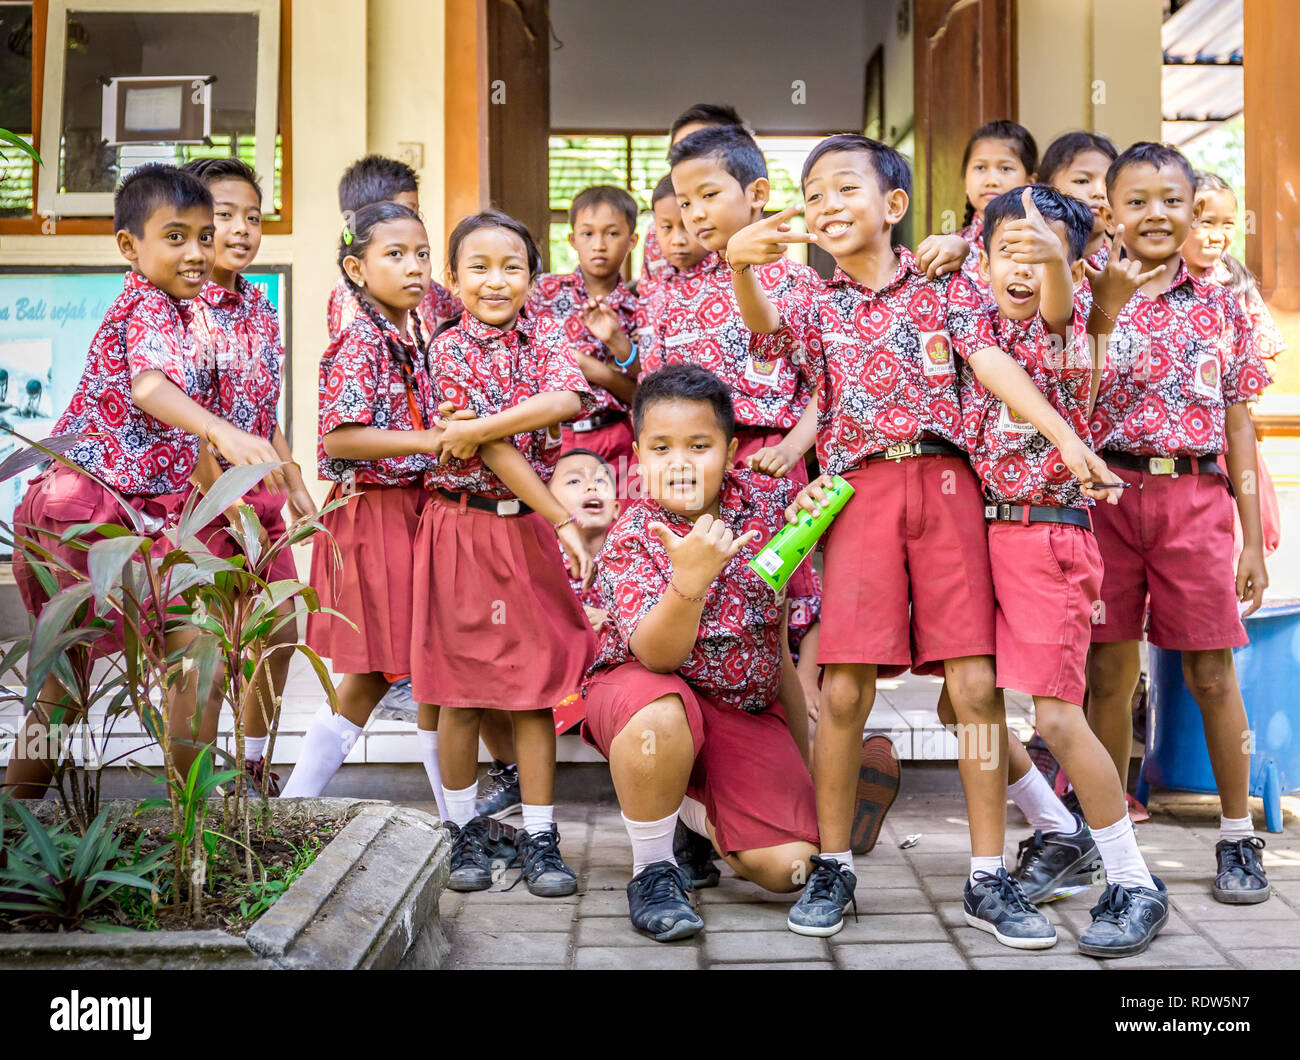 BALI, Indonesia - 25 Aprile 2018: giovani allievi felici balinese indossa abiti di scuola a studiare presso la scuola primaria sull isola di Bali, Indonesia Foto Stock